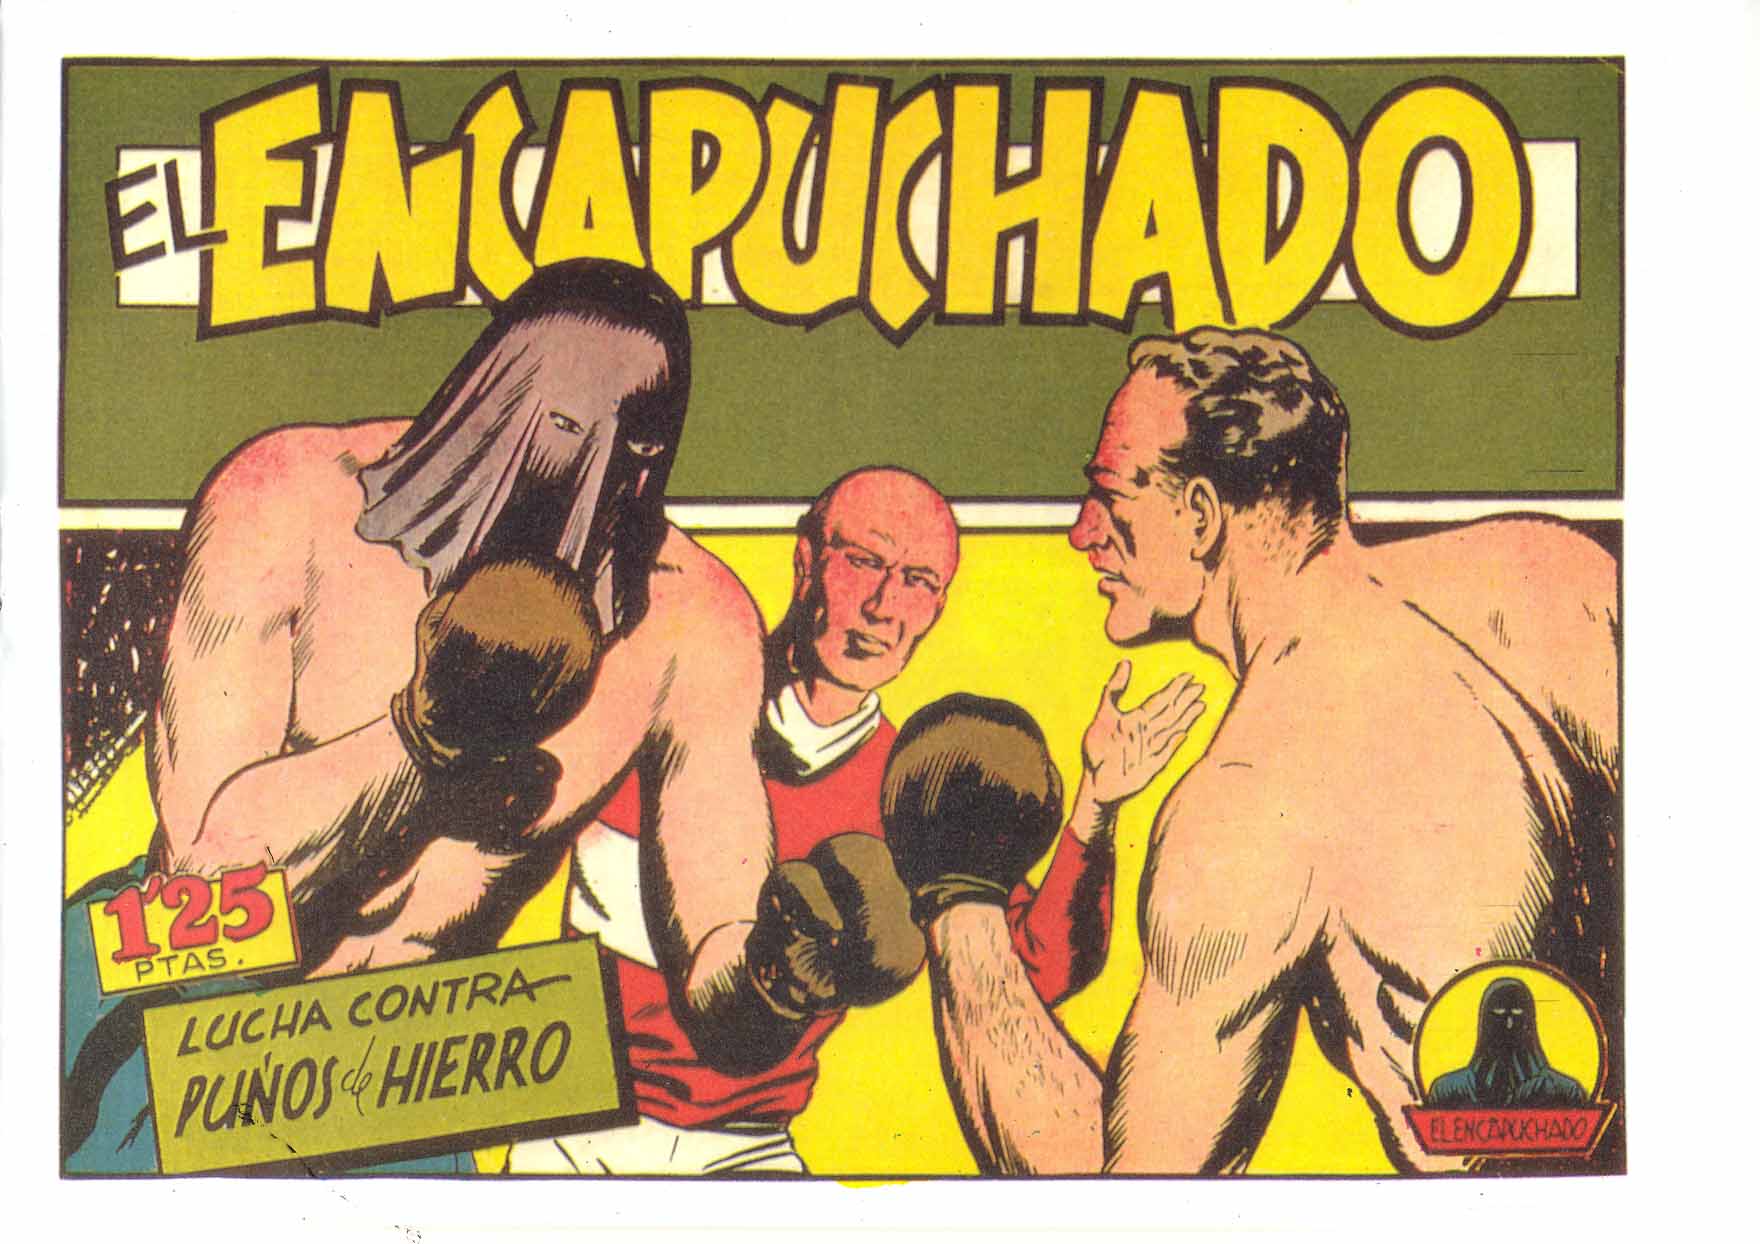 Book Cover For El Encapuchado 13 - Lucha Contra Puños De Hierro